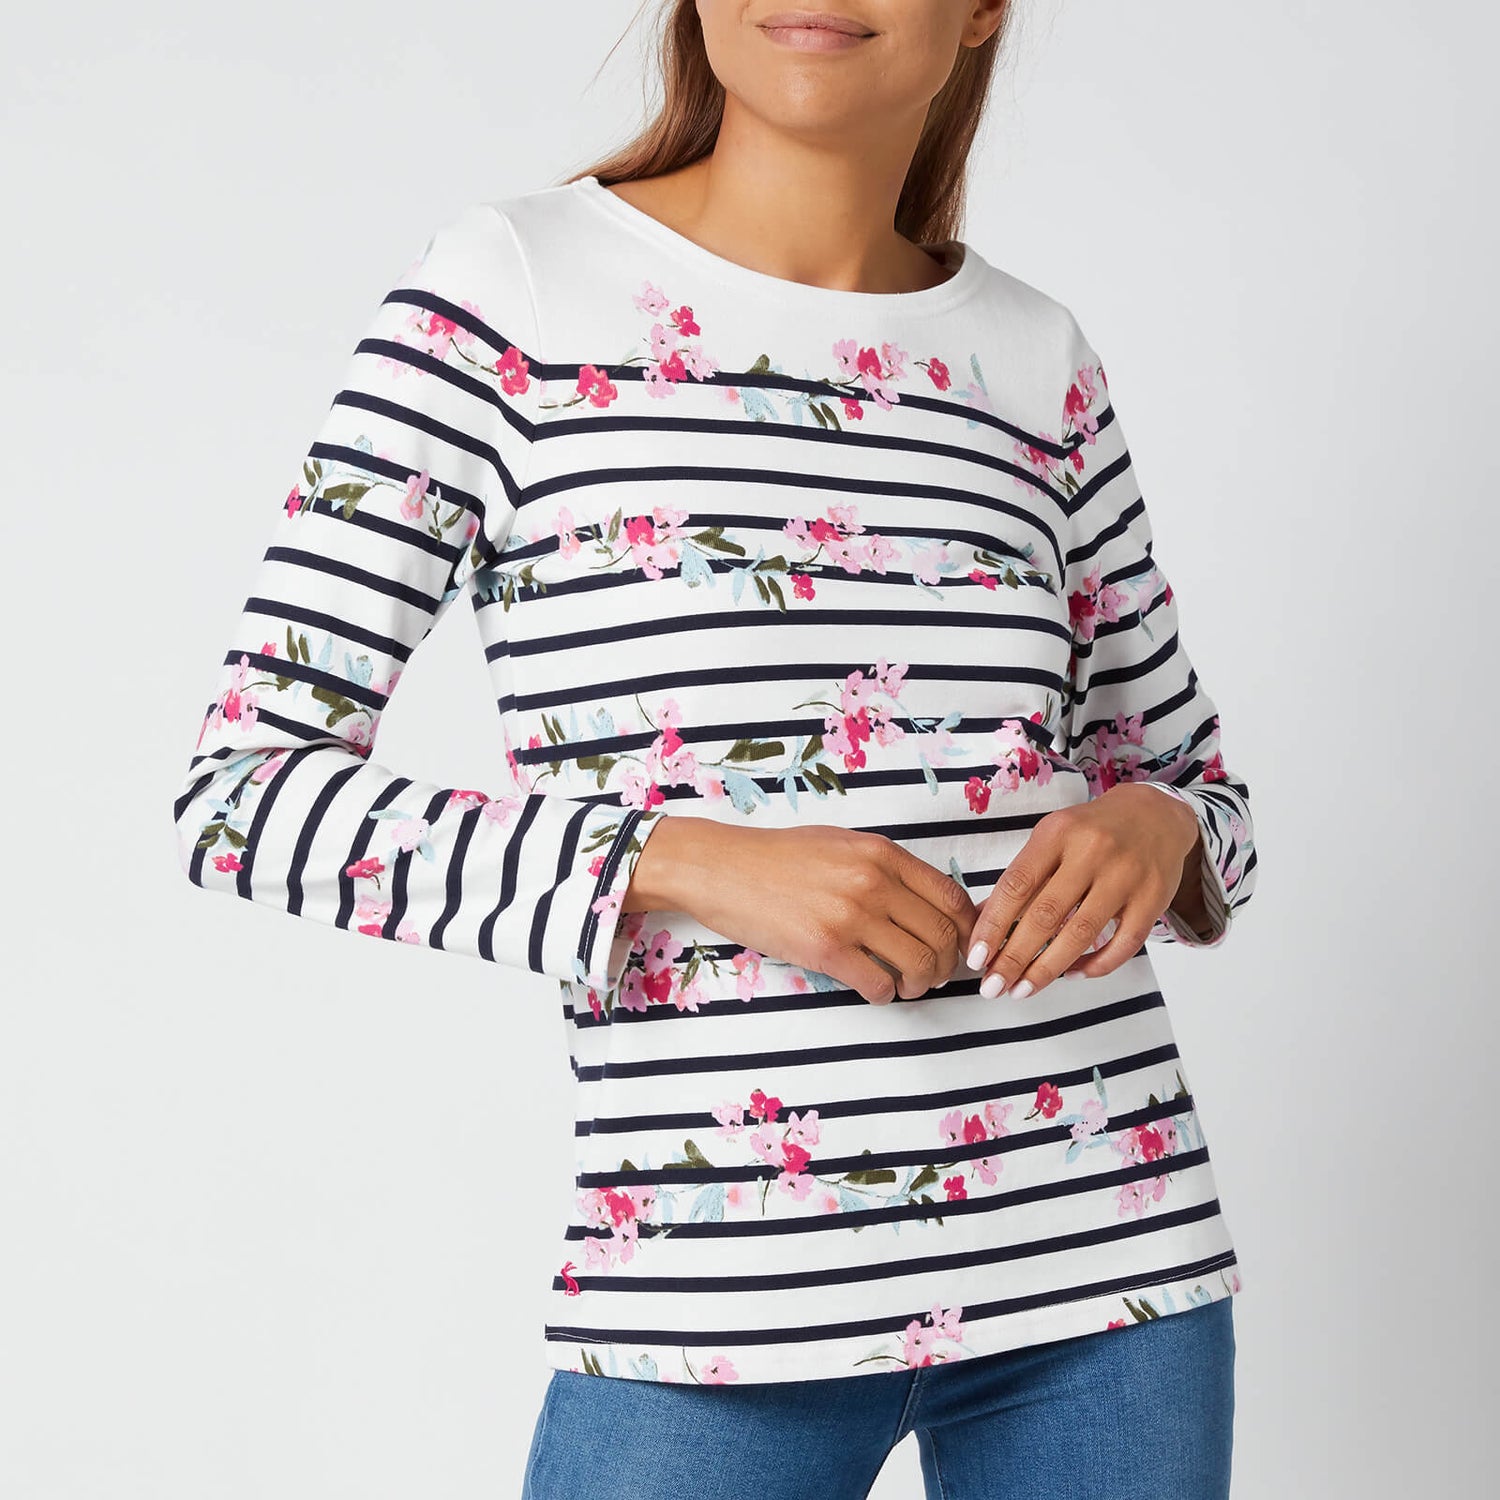 Joules Women's Harbour Print Long Sleeve Top - Créme Floral Stripe